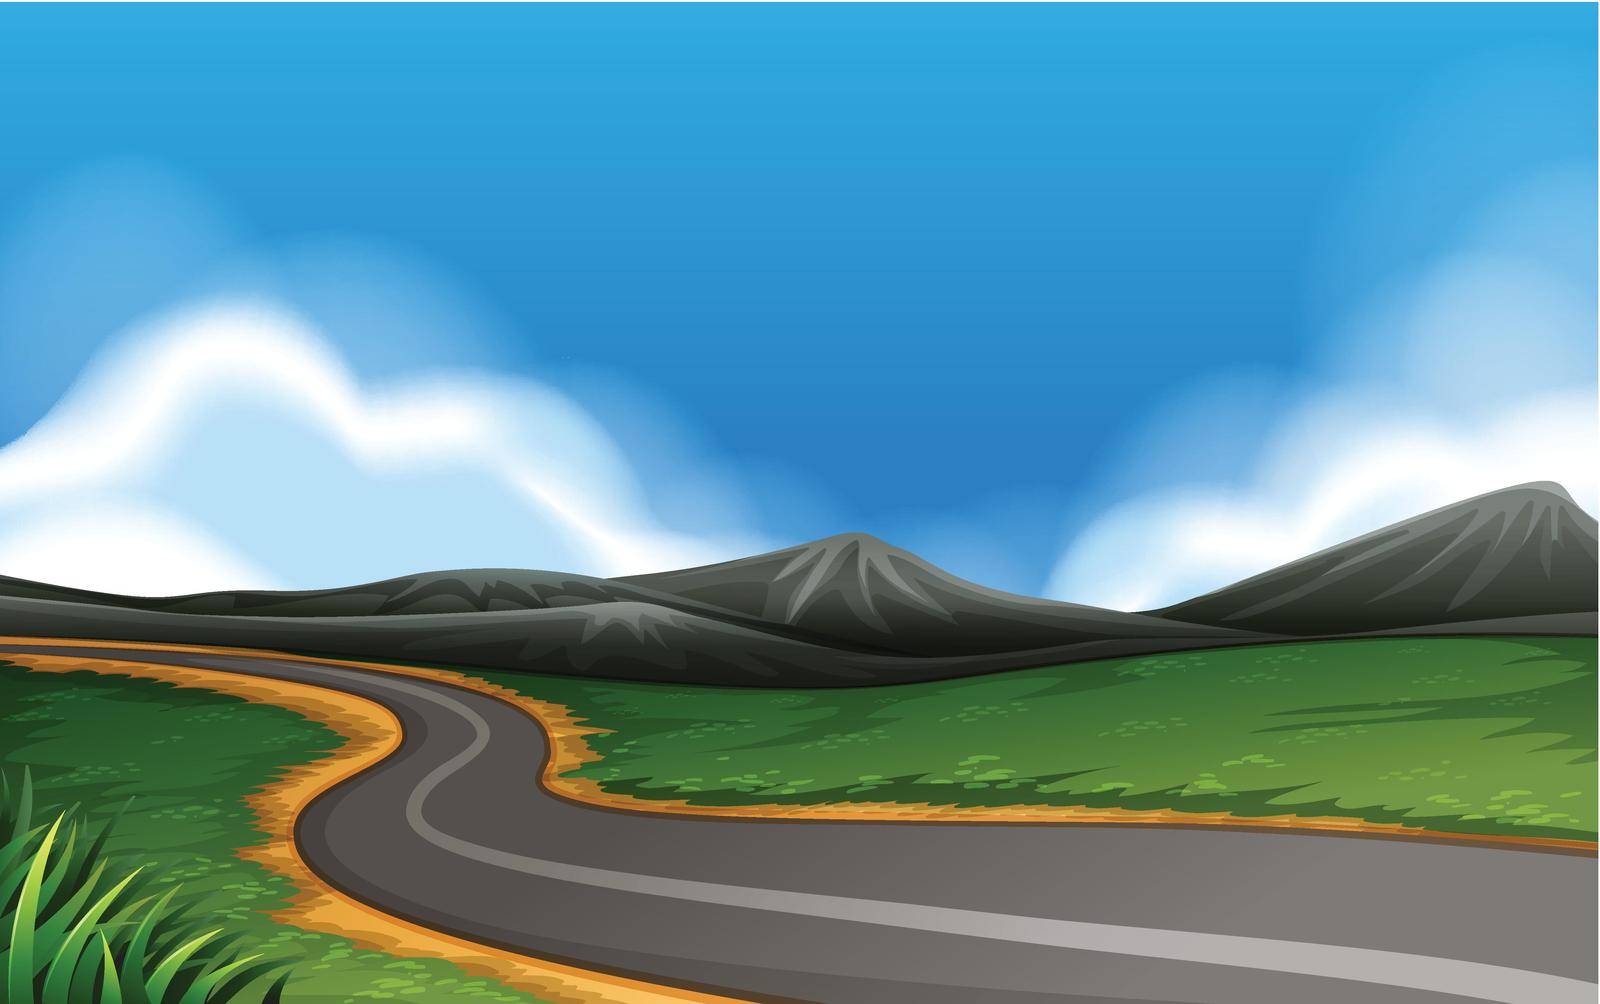 A rural road landscape illustration